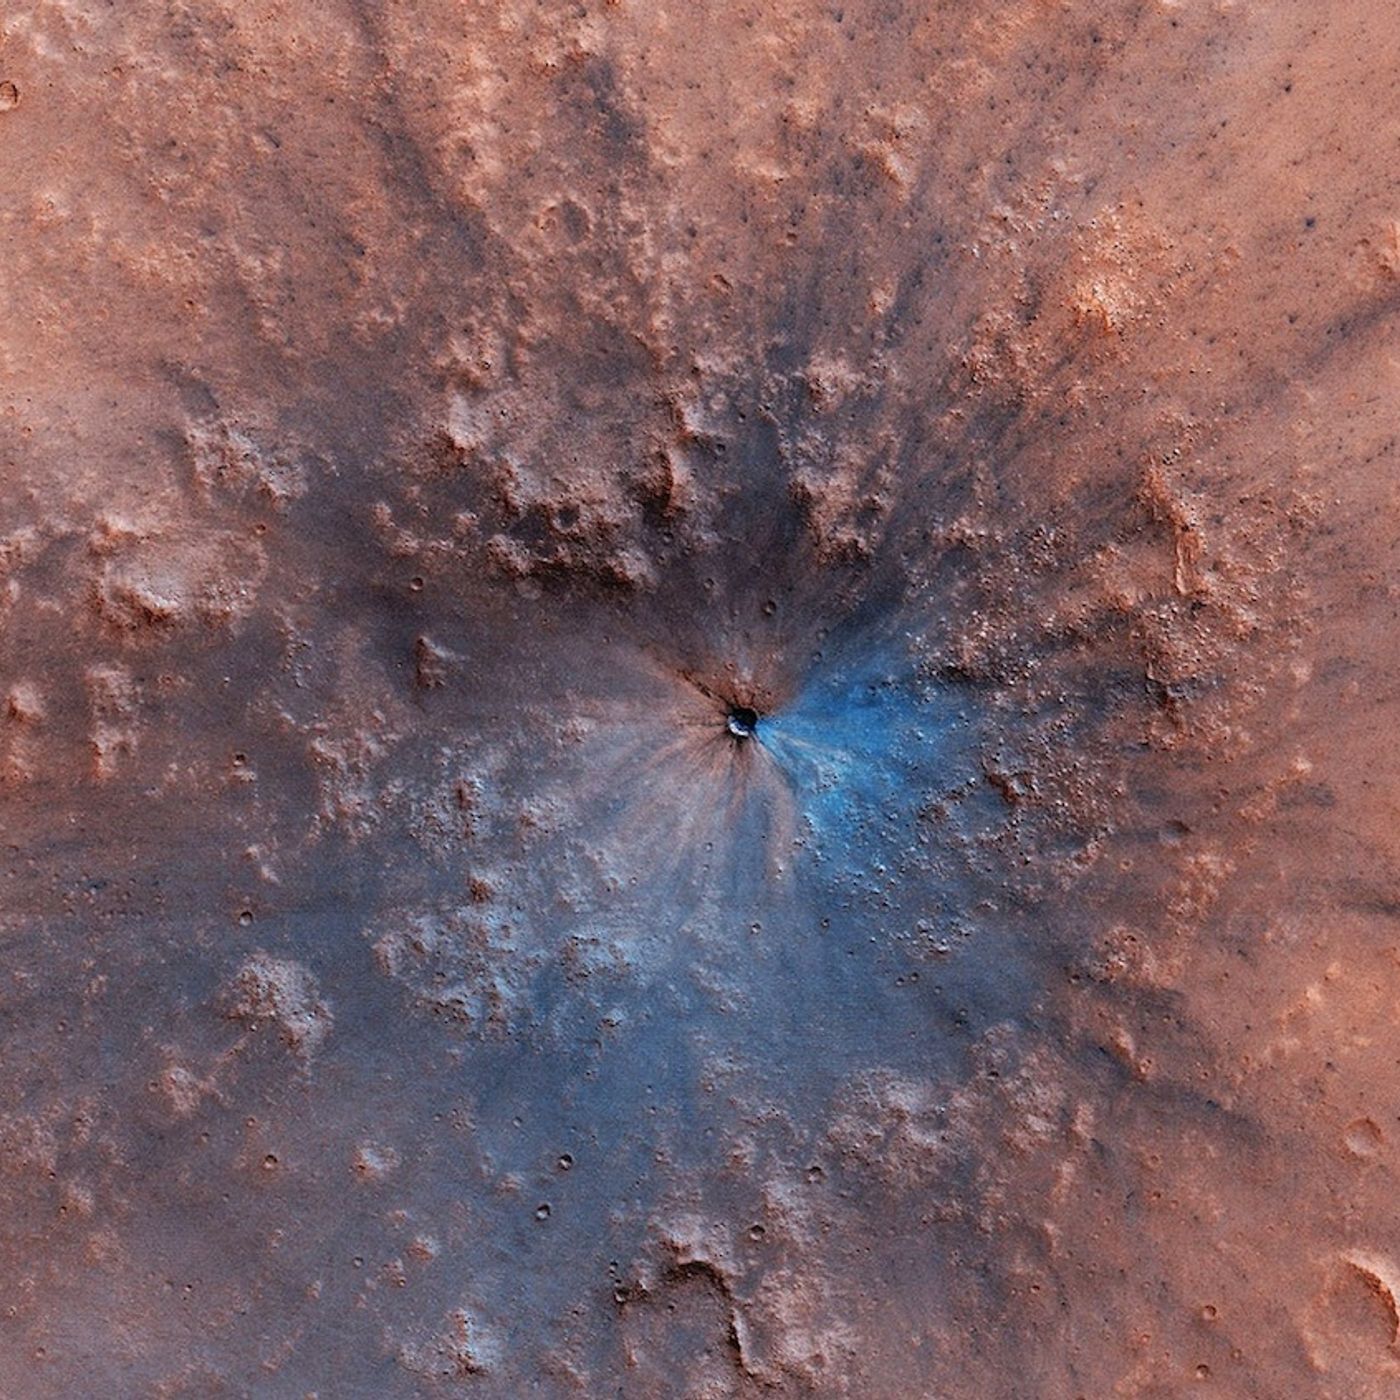 272E-285-Mars Impactors